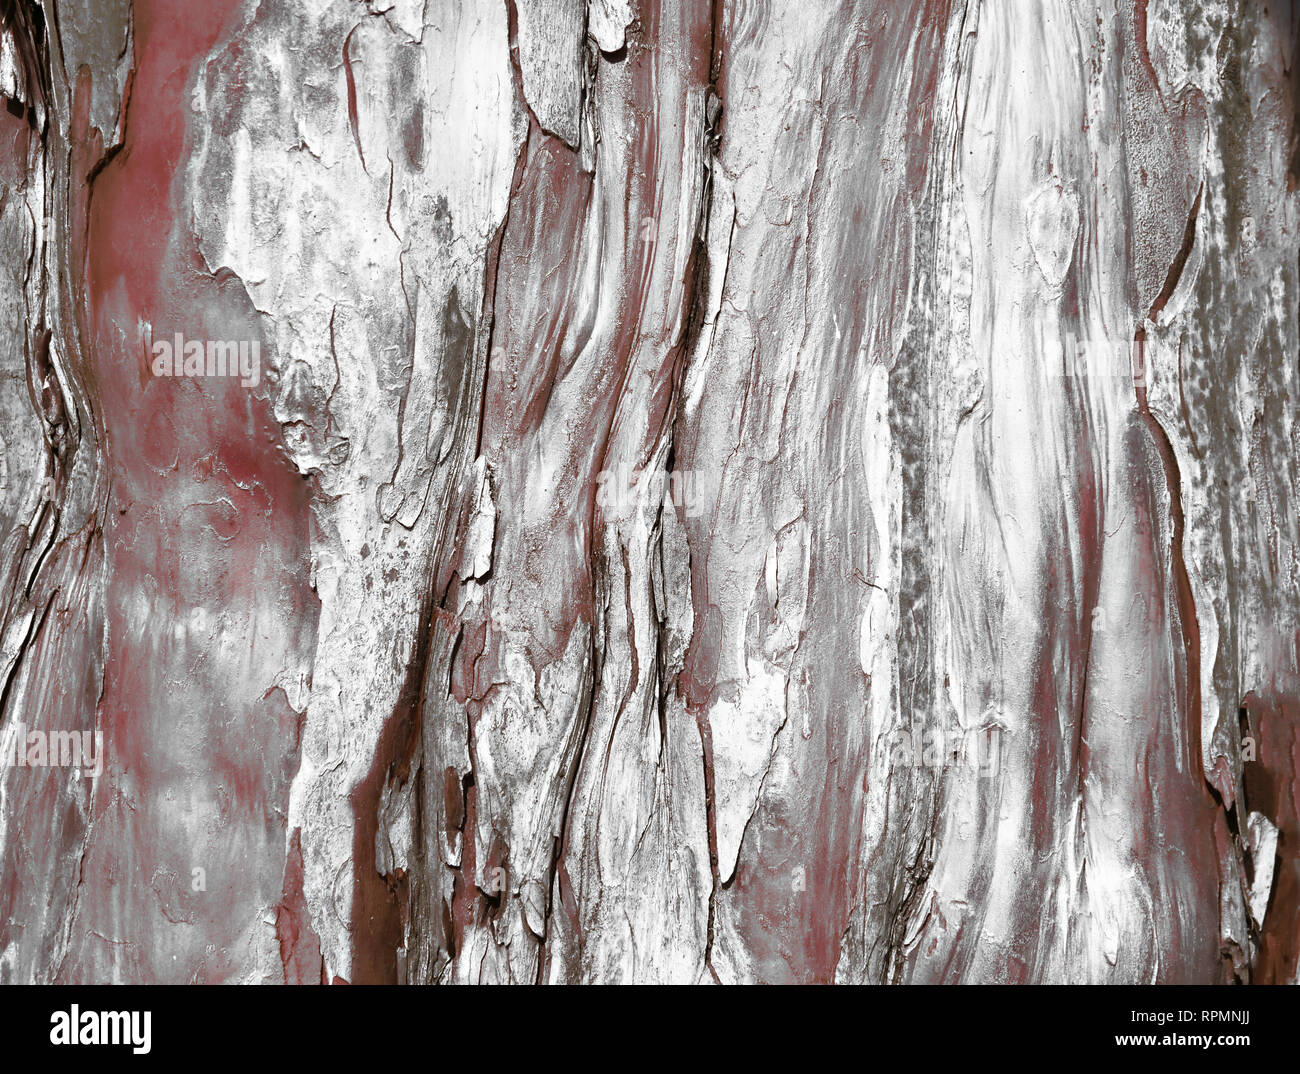 Estratto di corteccia di albero in rosso scuro con effetto argento Foto Stock